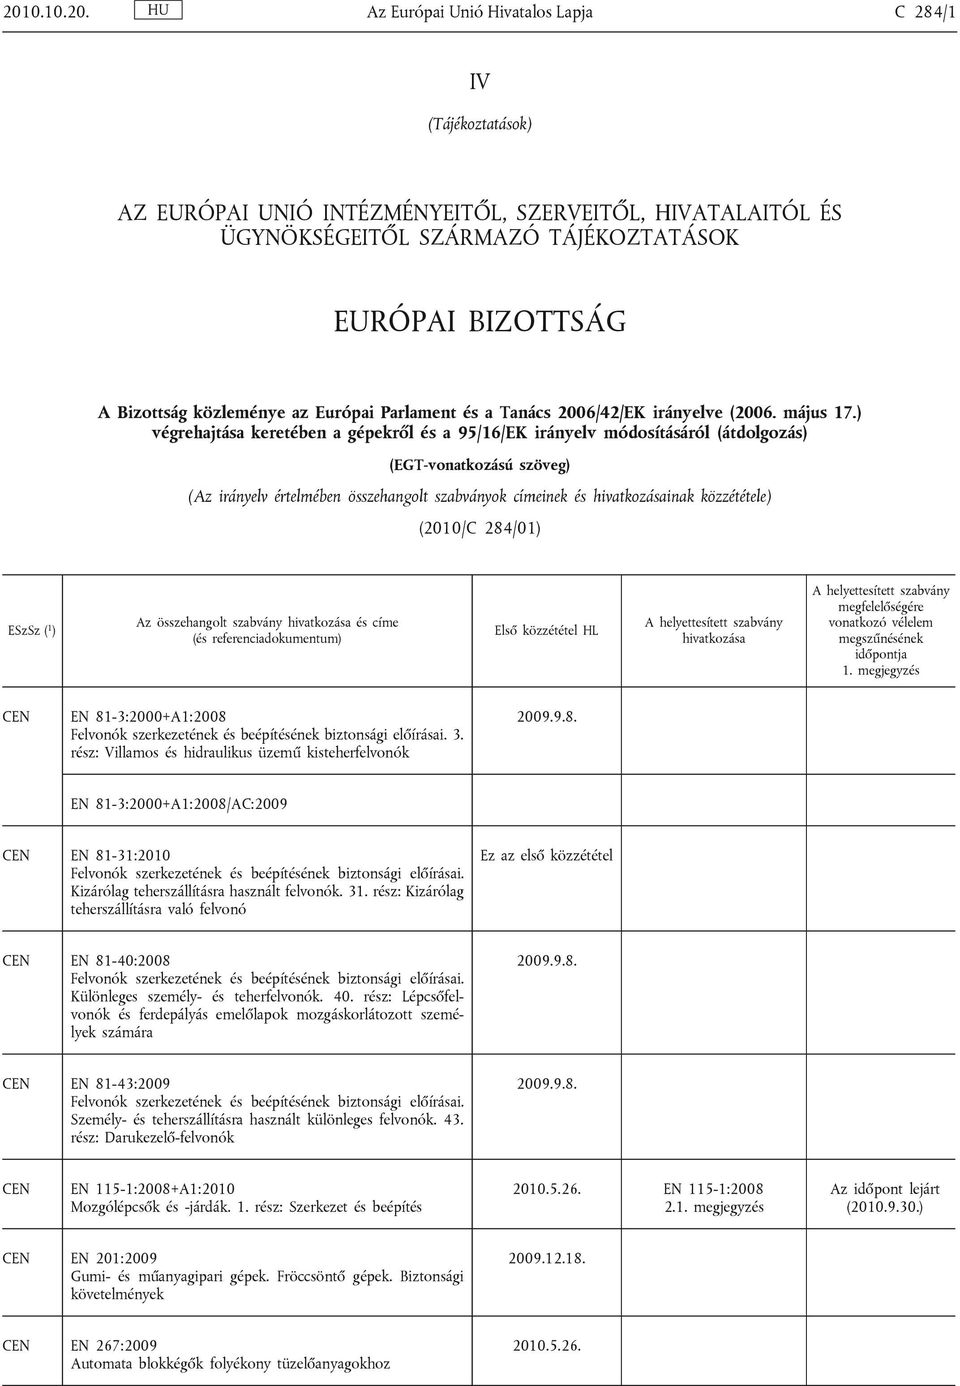 ) végrehajtása keretében a gépekről és a 95/16/EK irányelv módosításáról (átdolgozás) (EGT-vonatkozású szöveg) (Az irányelv értelmében összehangolt szabványok címeinek és inak közzététele) (2010/C